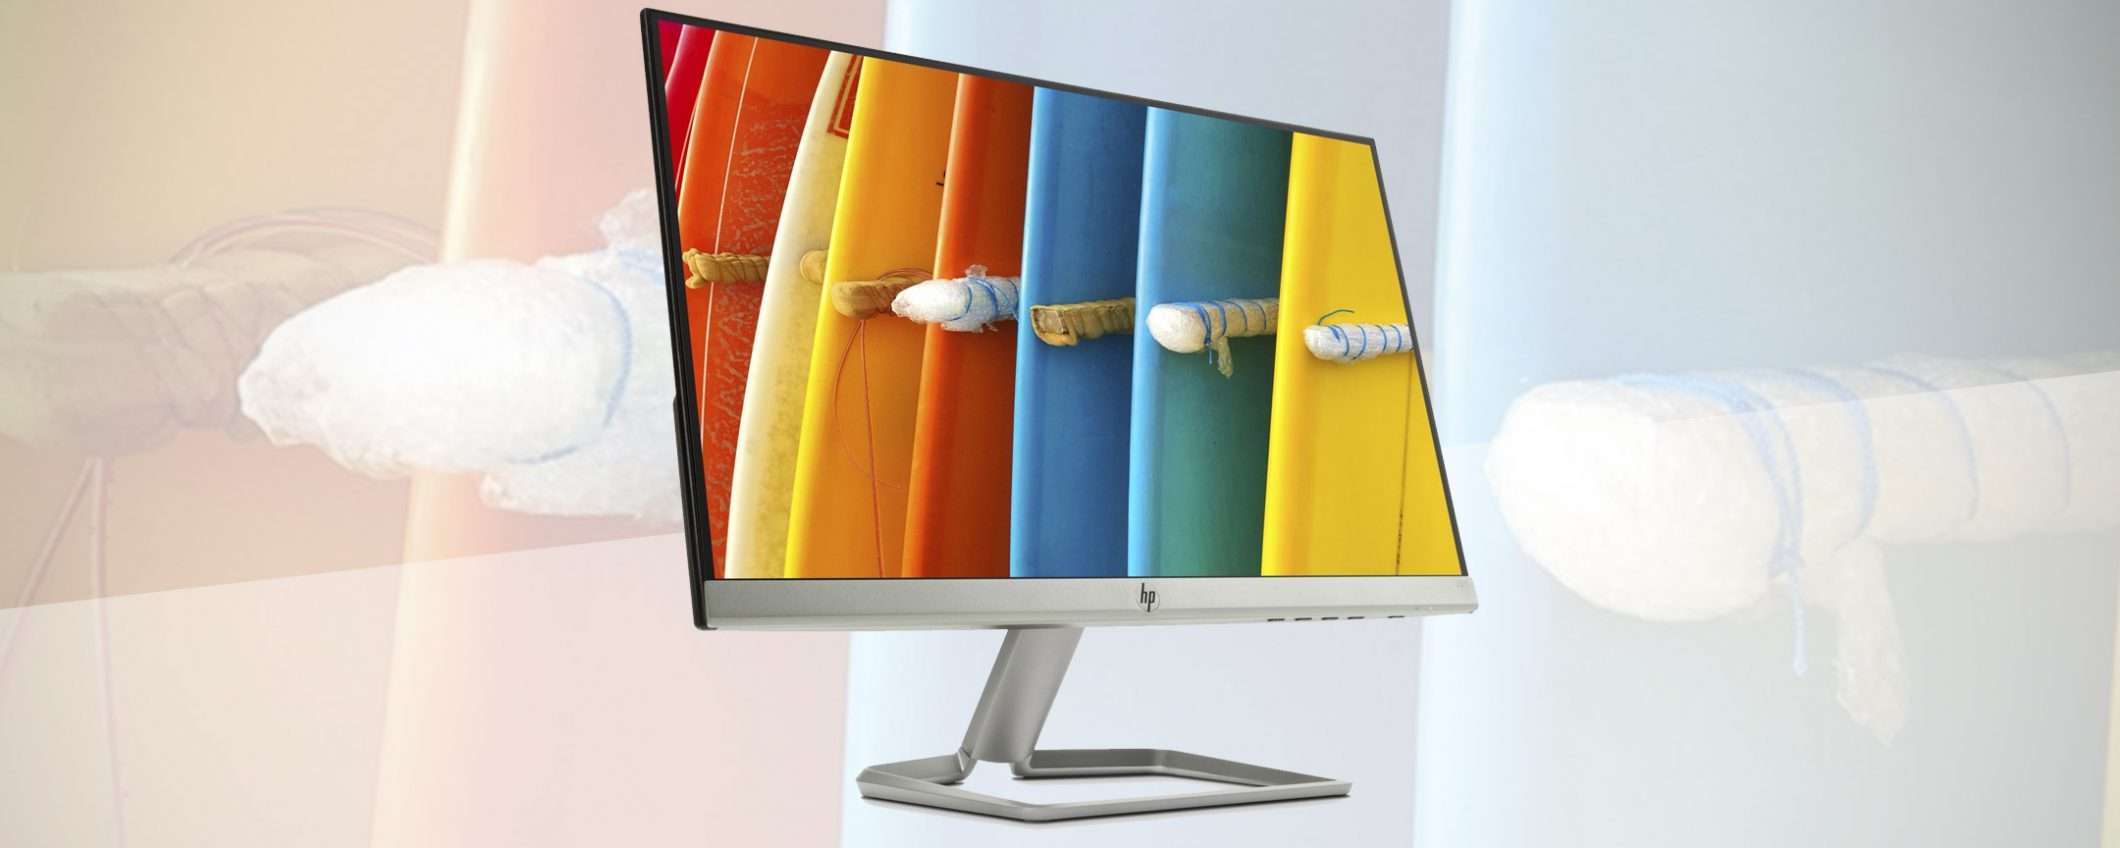 Il monitor HP 22F in offerta su eBay a 99,99 euro